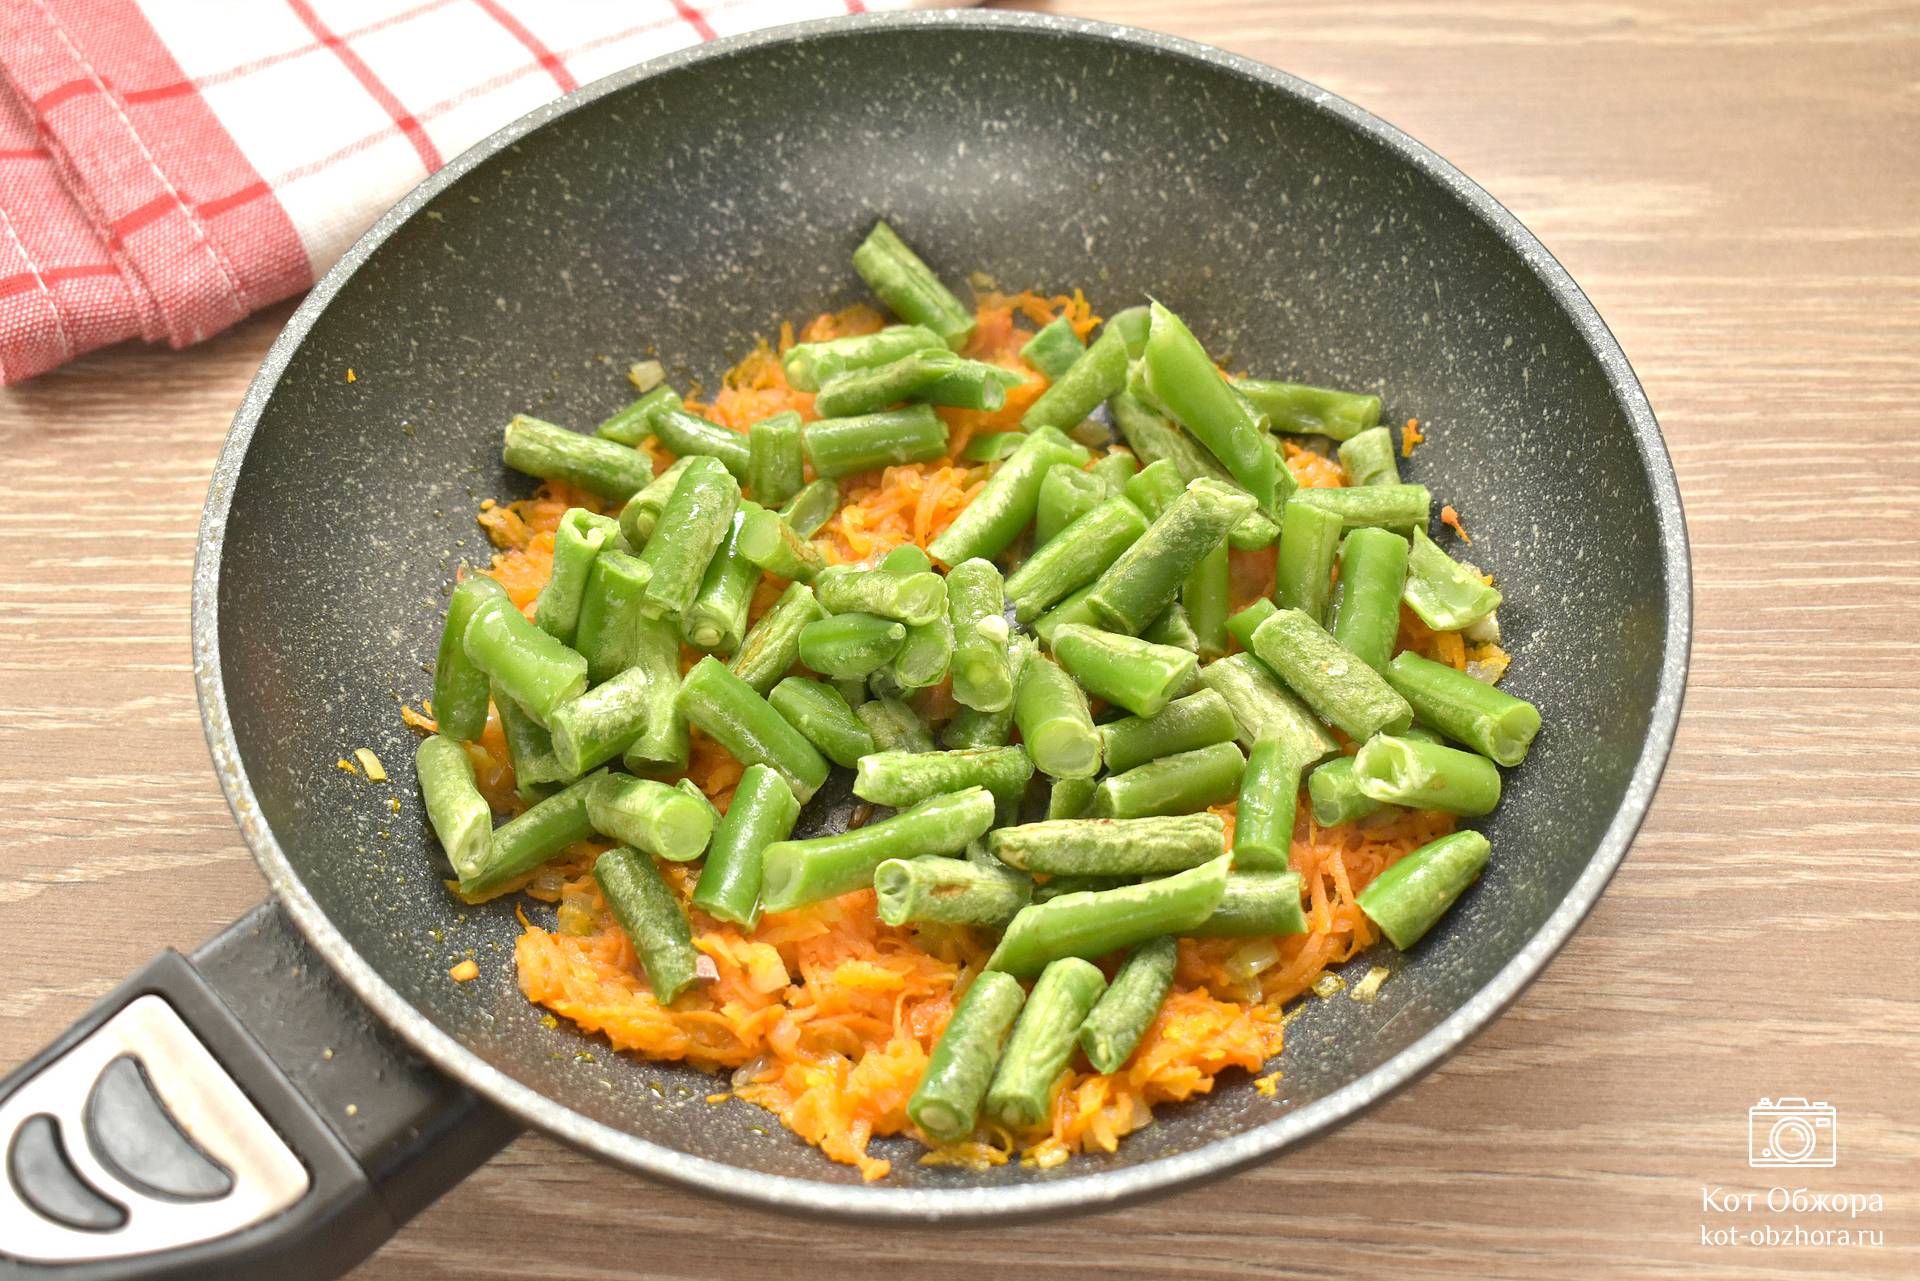 Рис со стручковой фасолью и овощами - Пошаговый рецепт с фото. Вторые блюда. Блюда из овощей